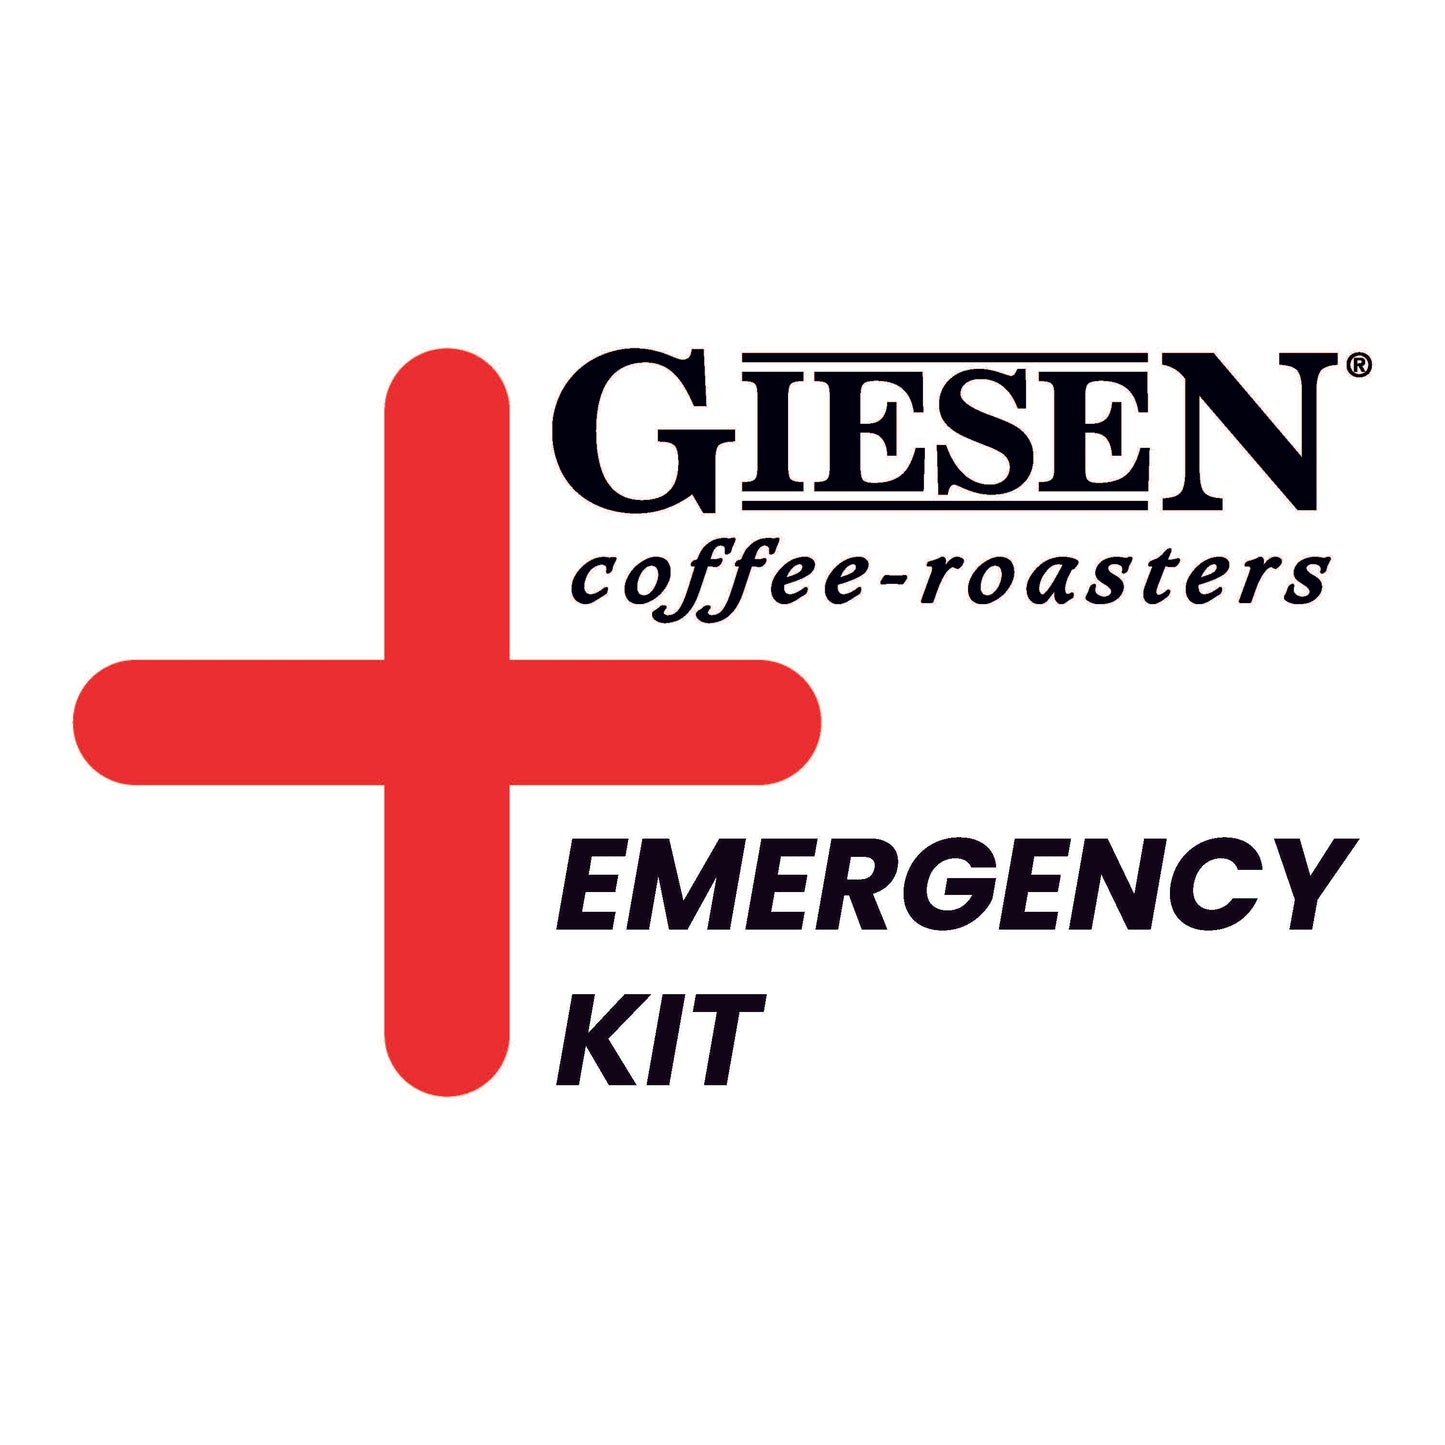 Emergency kit - W6A PRO / CE version